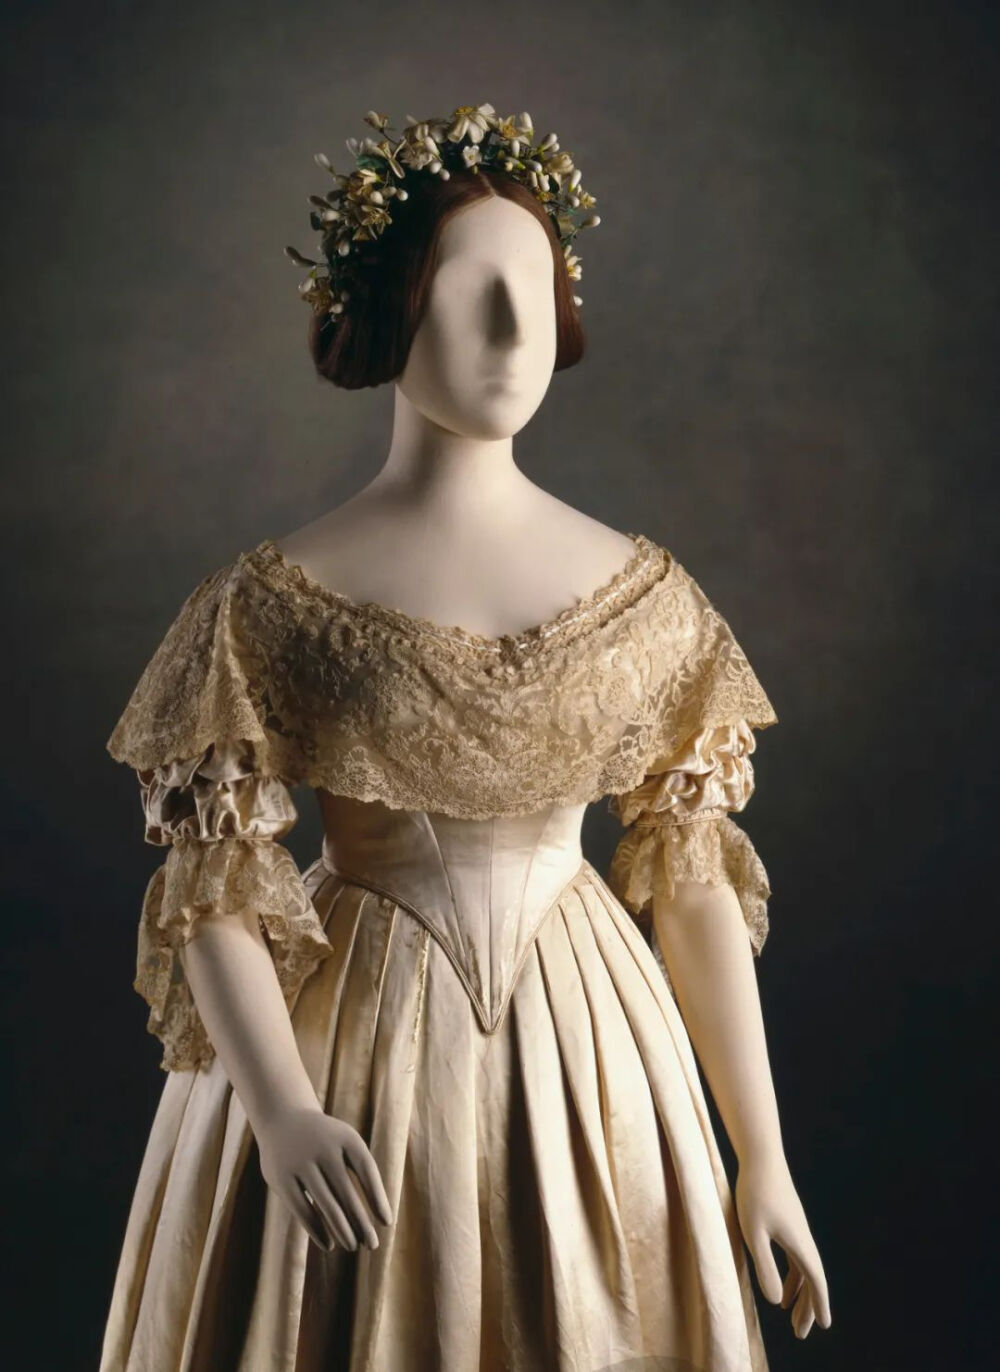 维多利亚女王的婚纱藏于皇家信托下摆的蕾丝被女王拆除缝制在其它衣服